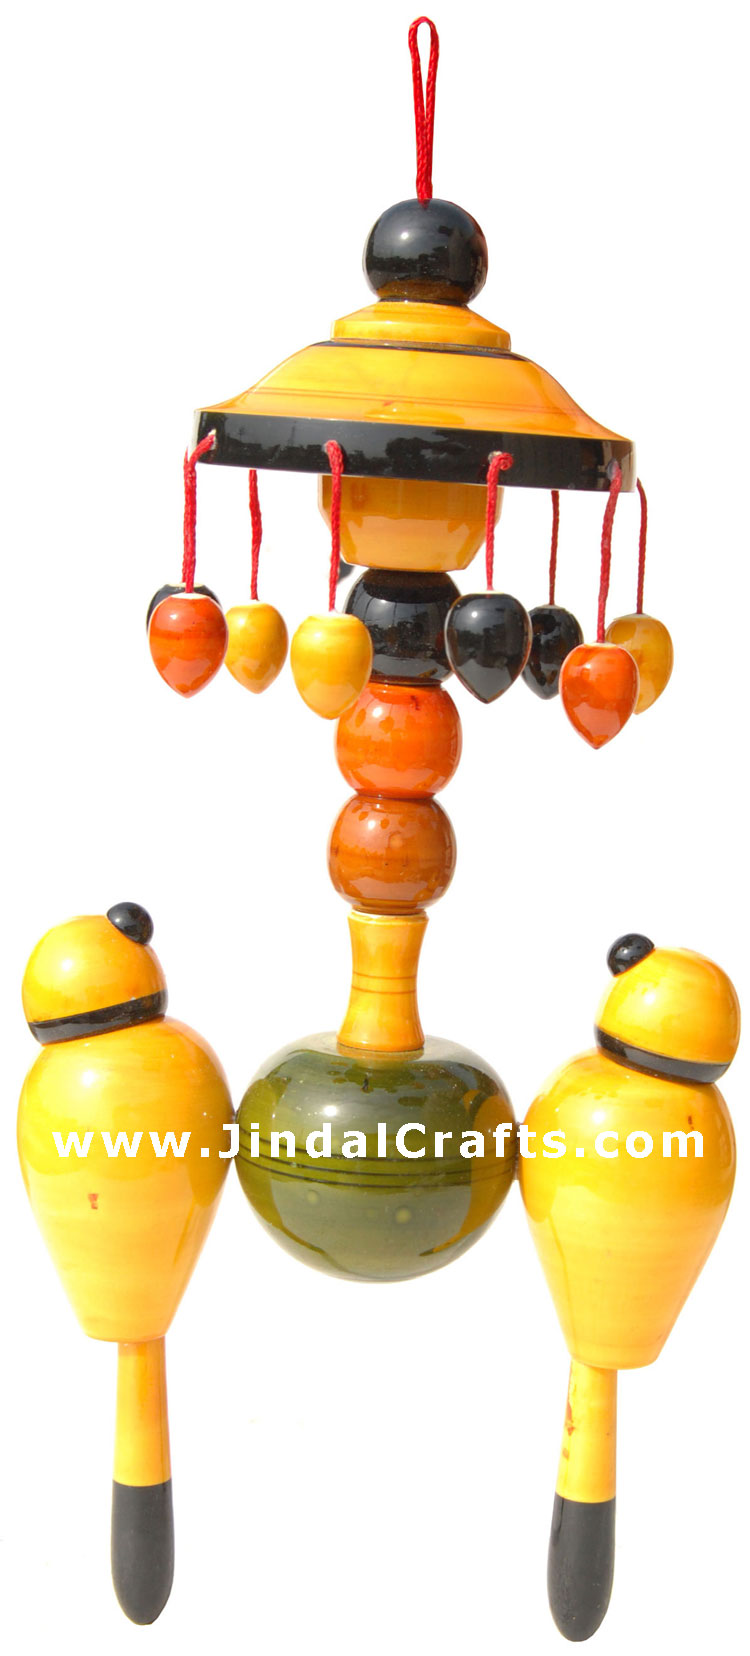 Handmade Handpainted Wooden Toy India Art